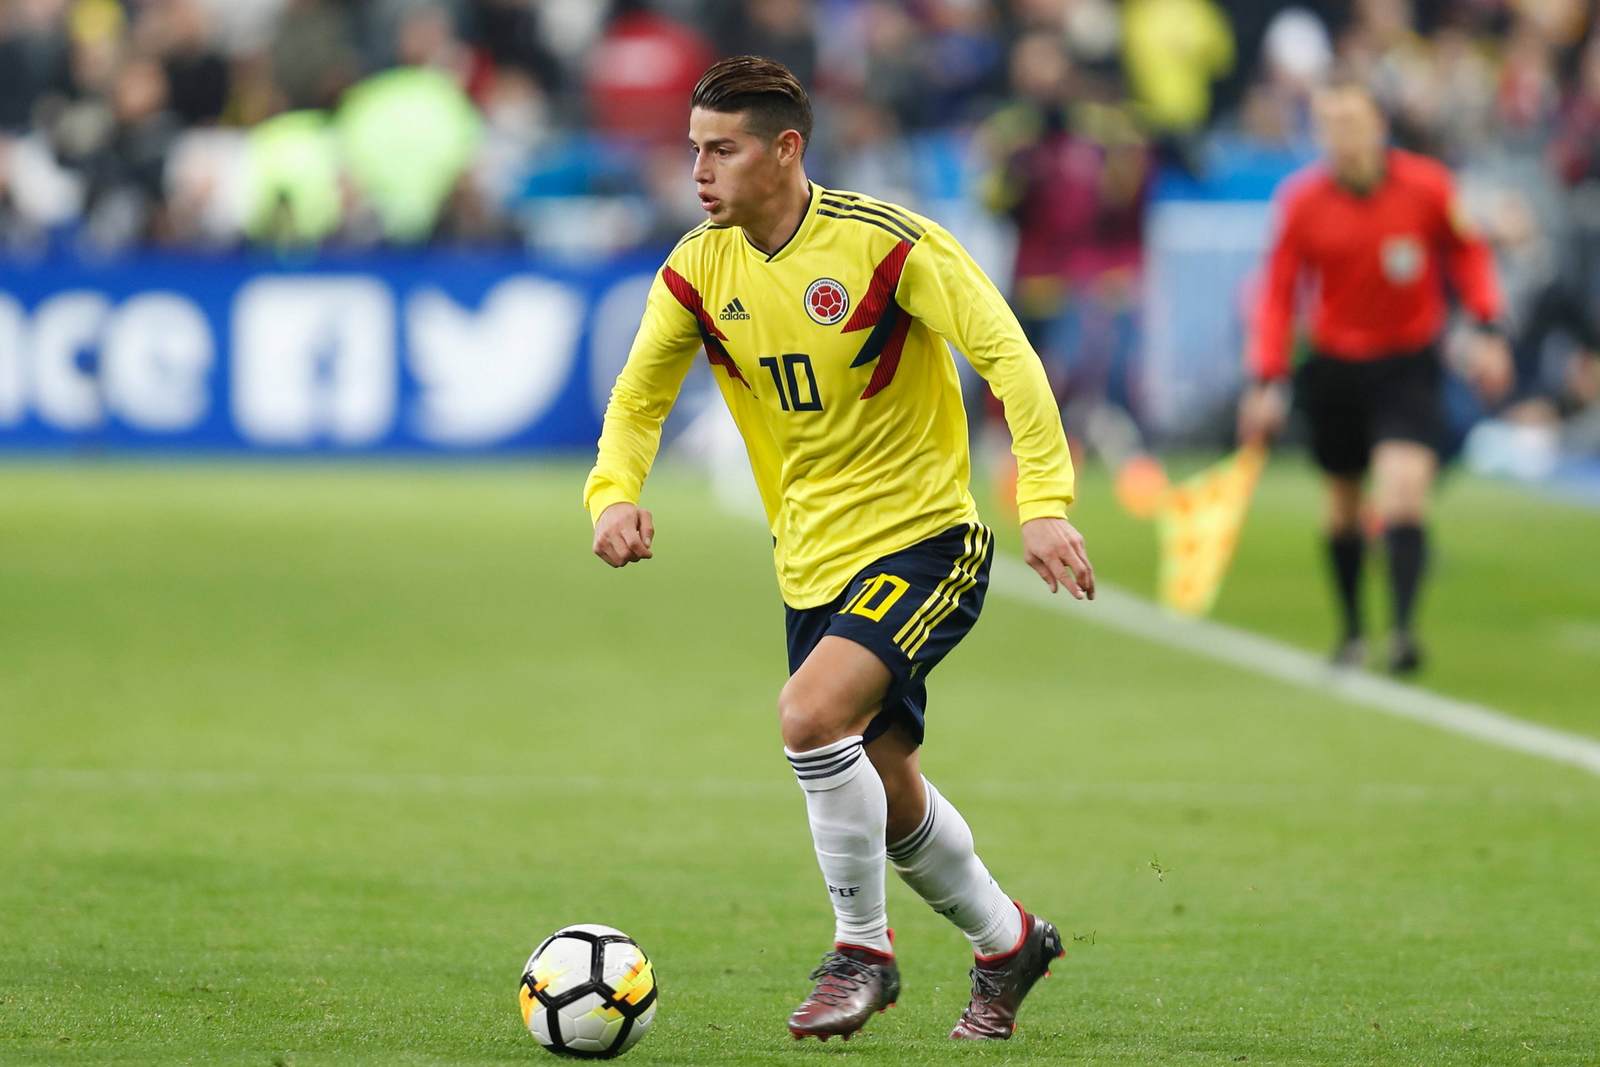 James Rodriguez am Ball für Kolumbien. Jetzt auf die Partie Kolumbien gegen Japan wetten